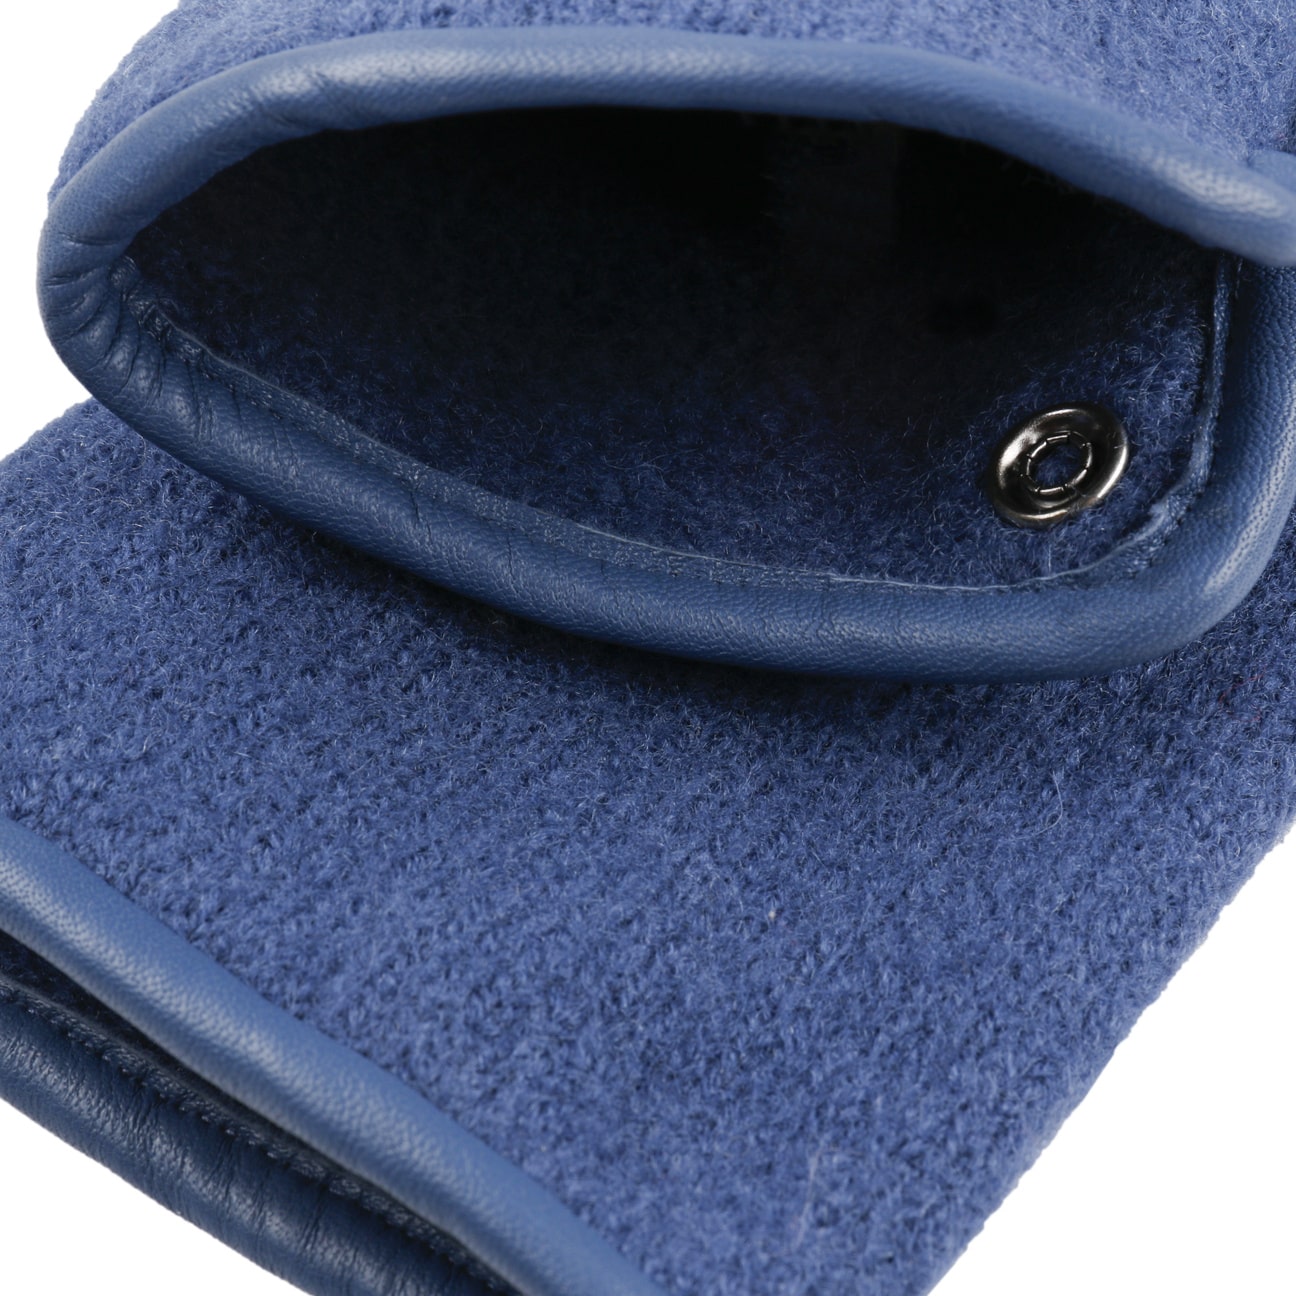 Gants laine yack - Missegle : Fabricant français de gants en laine